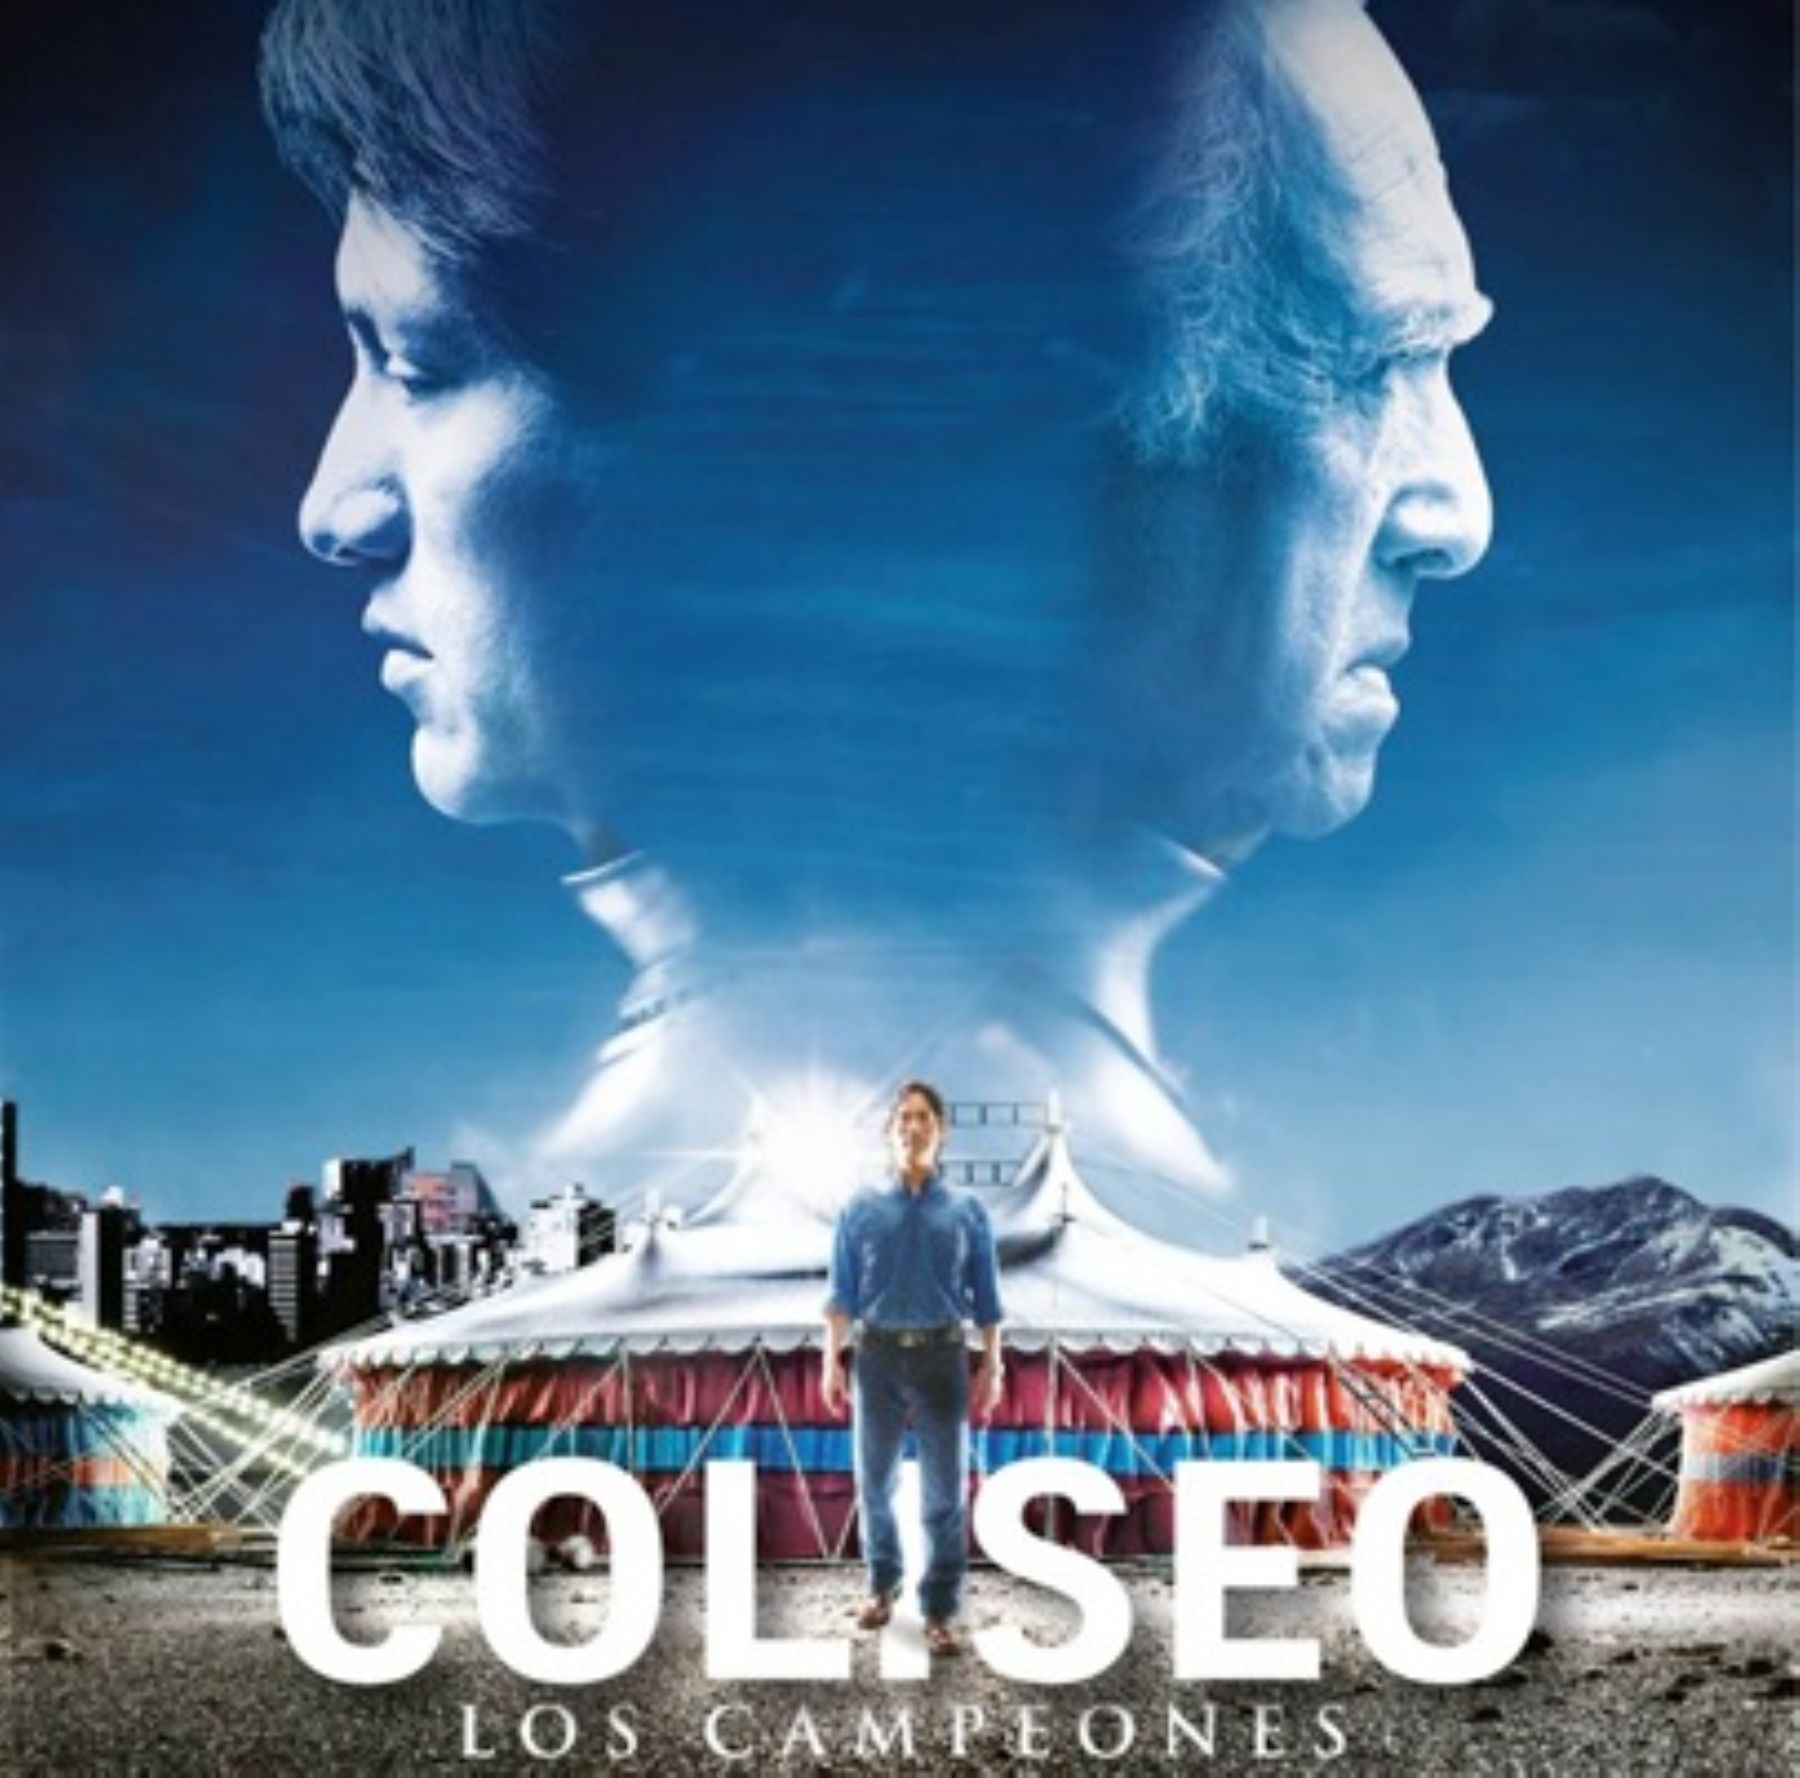 Afiche de la película peruana "Coliseo: los campeones".